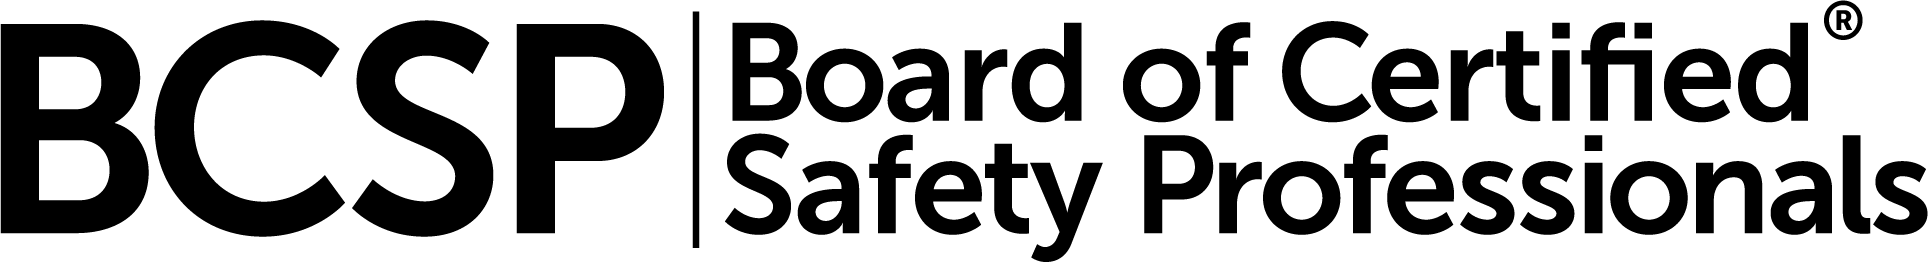 BCSP_Full Logo_Black-2